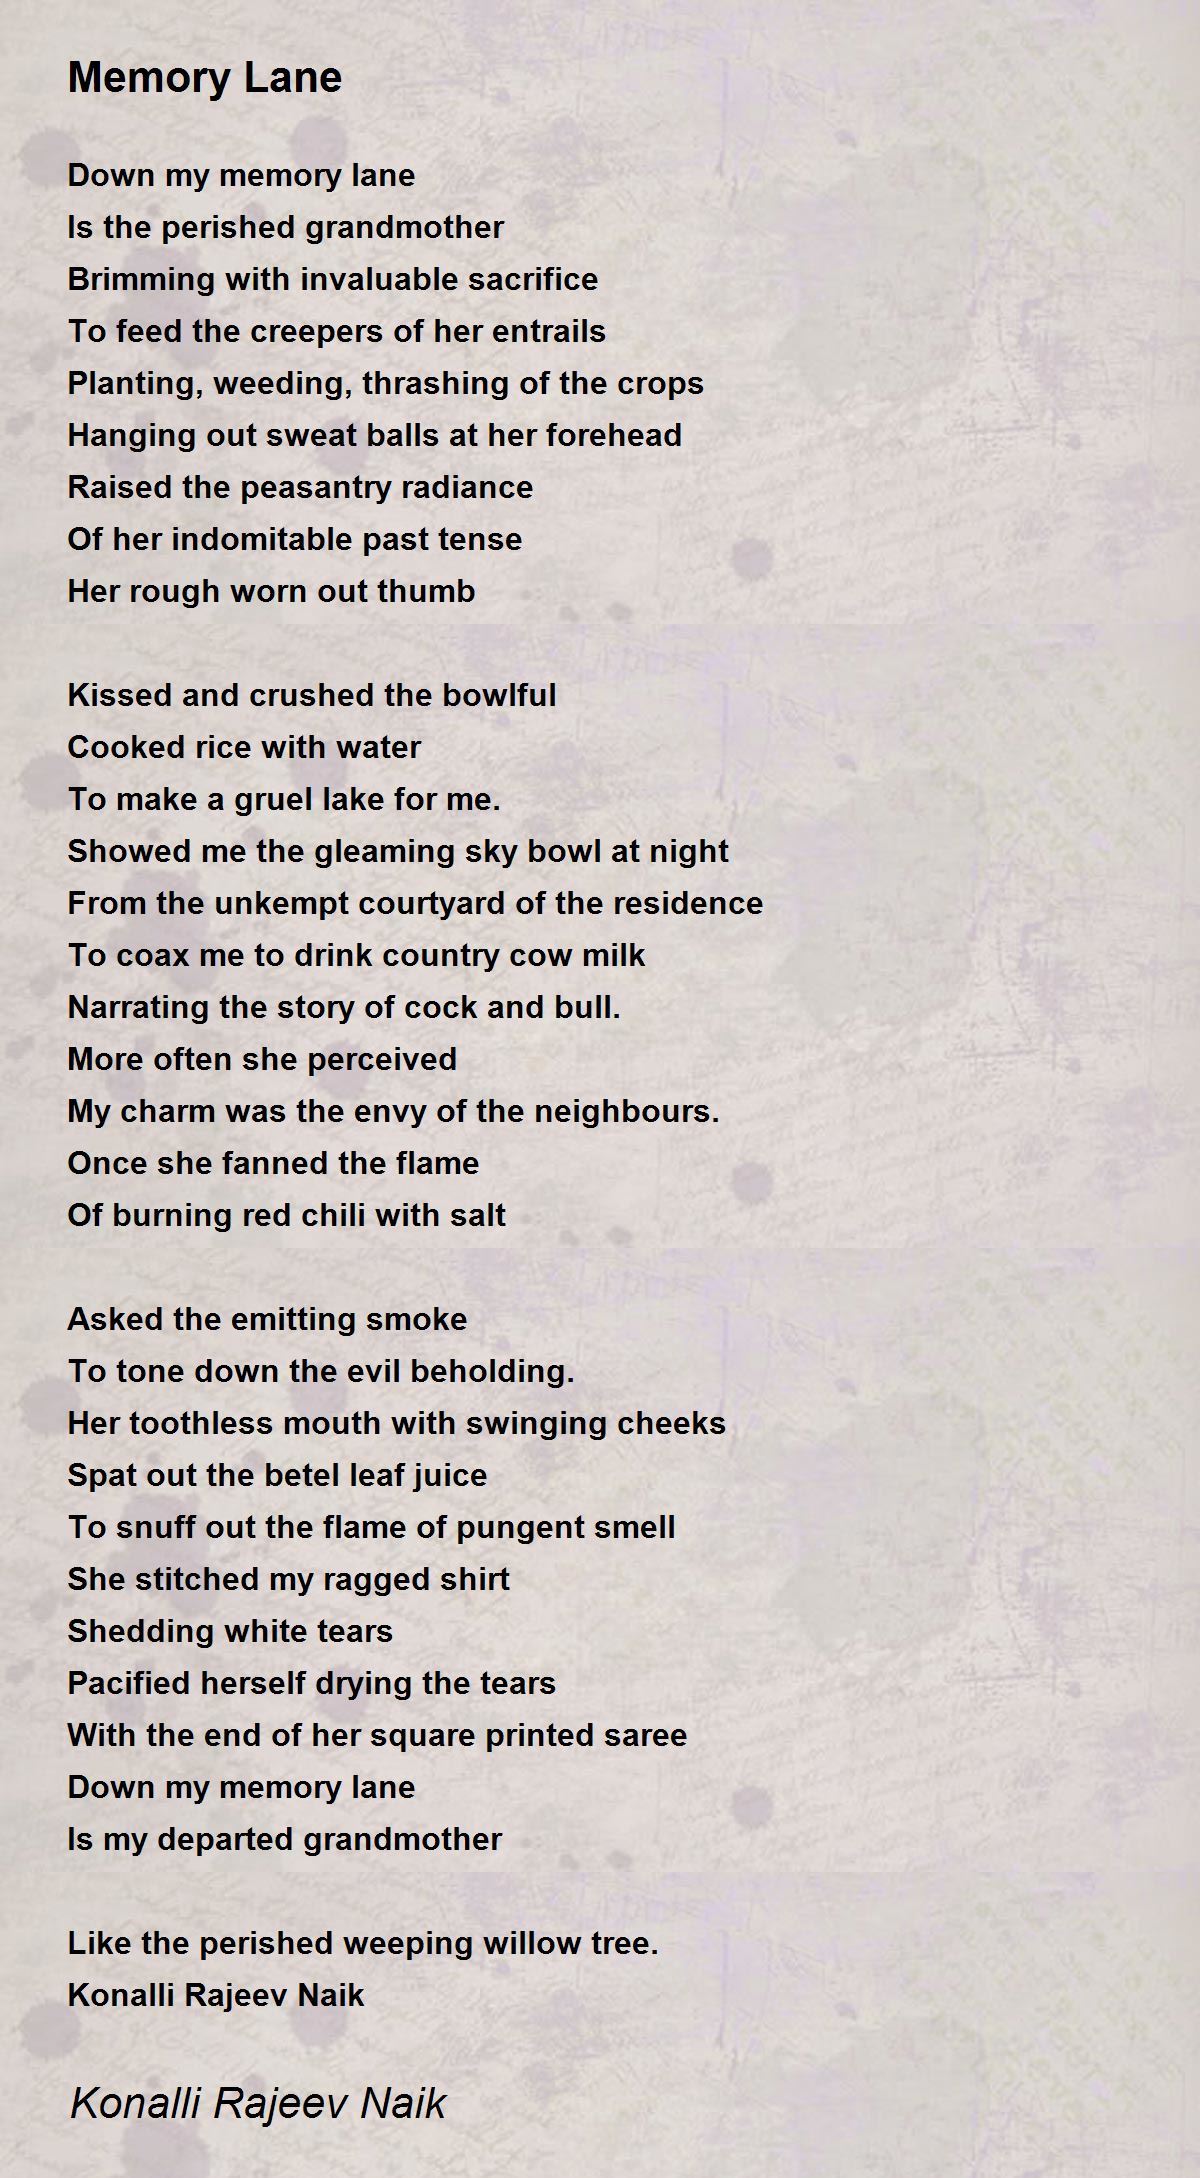 Memory Lane - Memory Lane Poem by Konalli Rajeev Naik